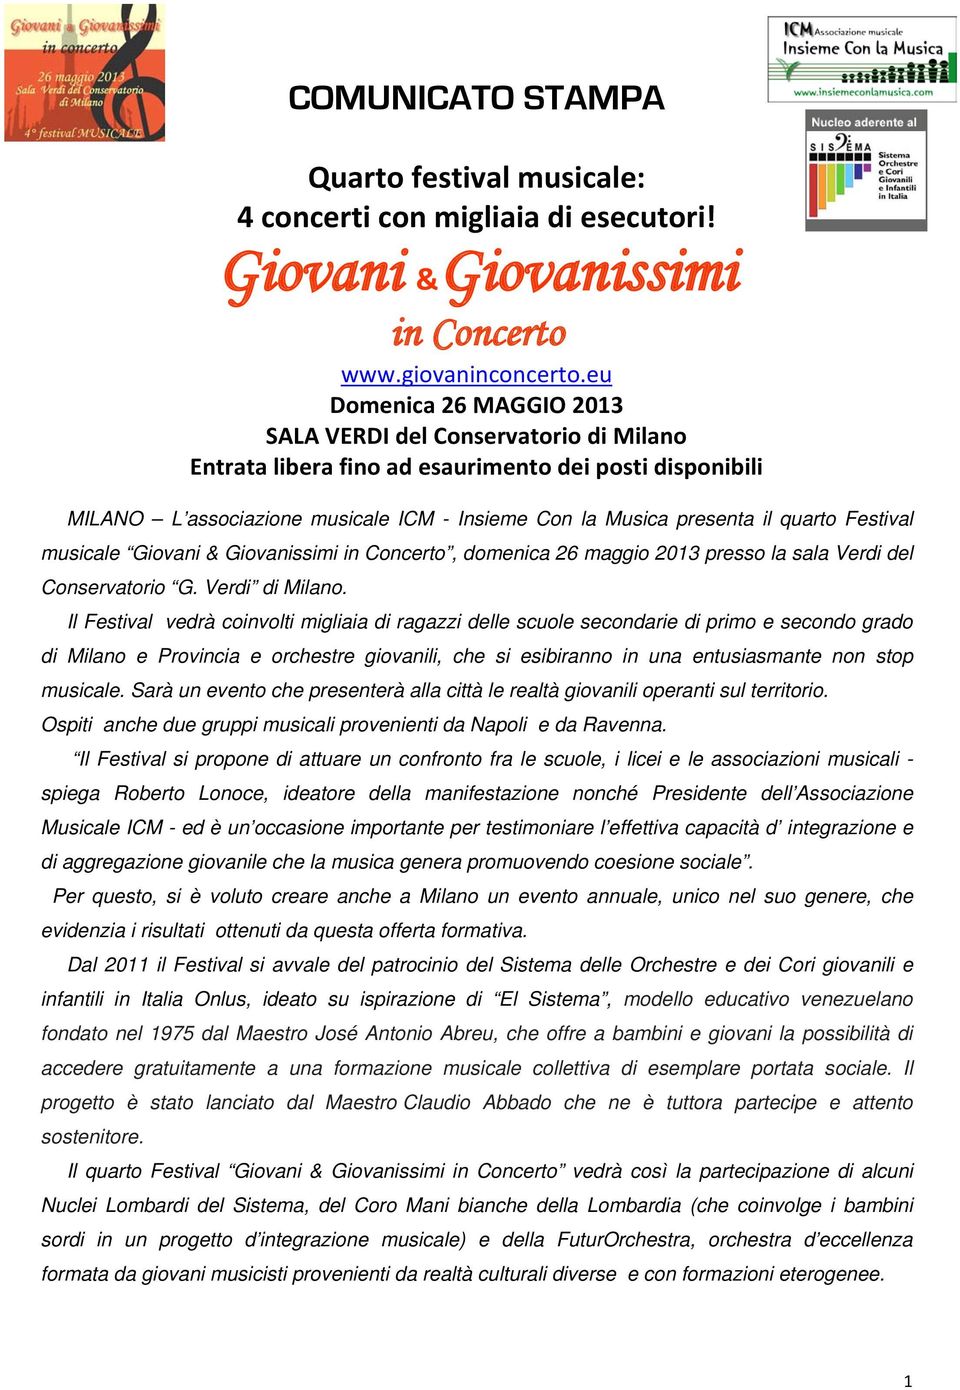 quarto Festival musicale Giovani & Giovanissimi in Concerto, domenica 26 maggio 2013 presso la sala Verdi del Conservatorio G. Verdi di Milano.